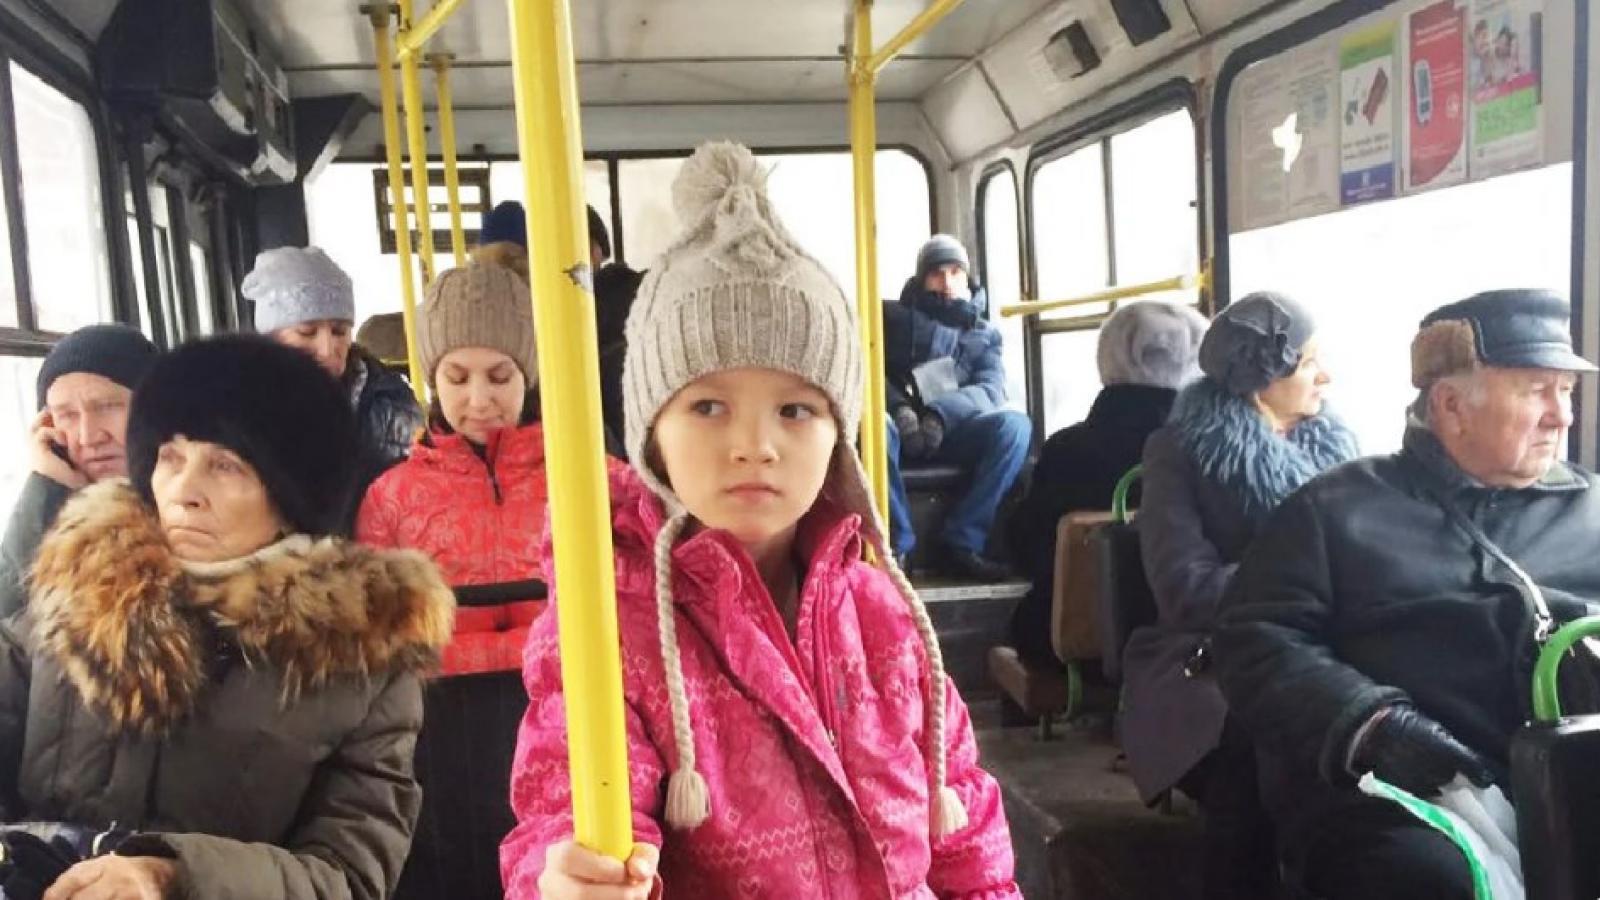 Автобус для детей